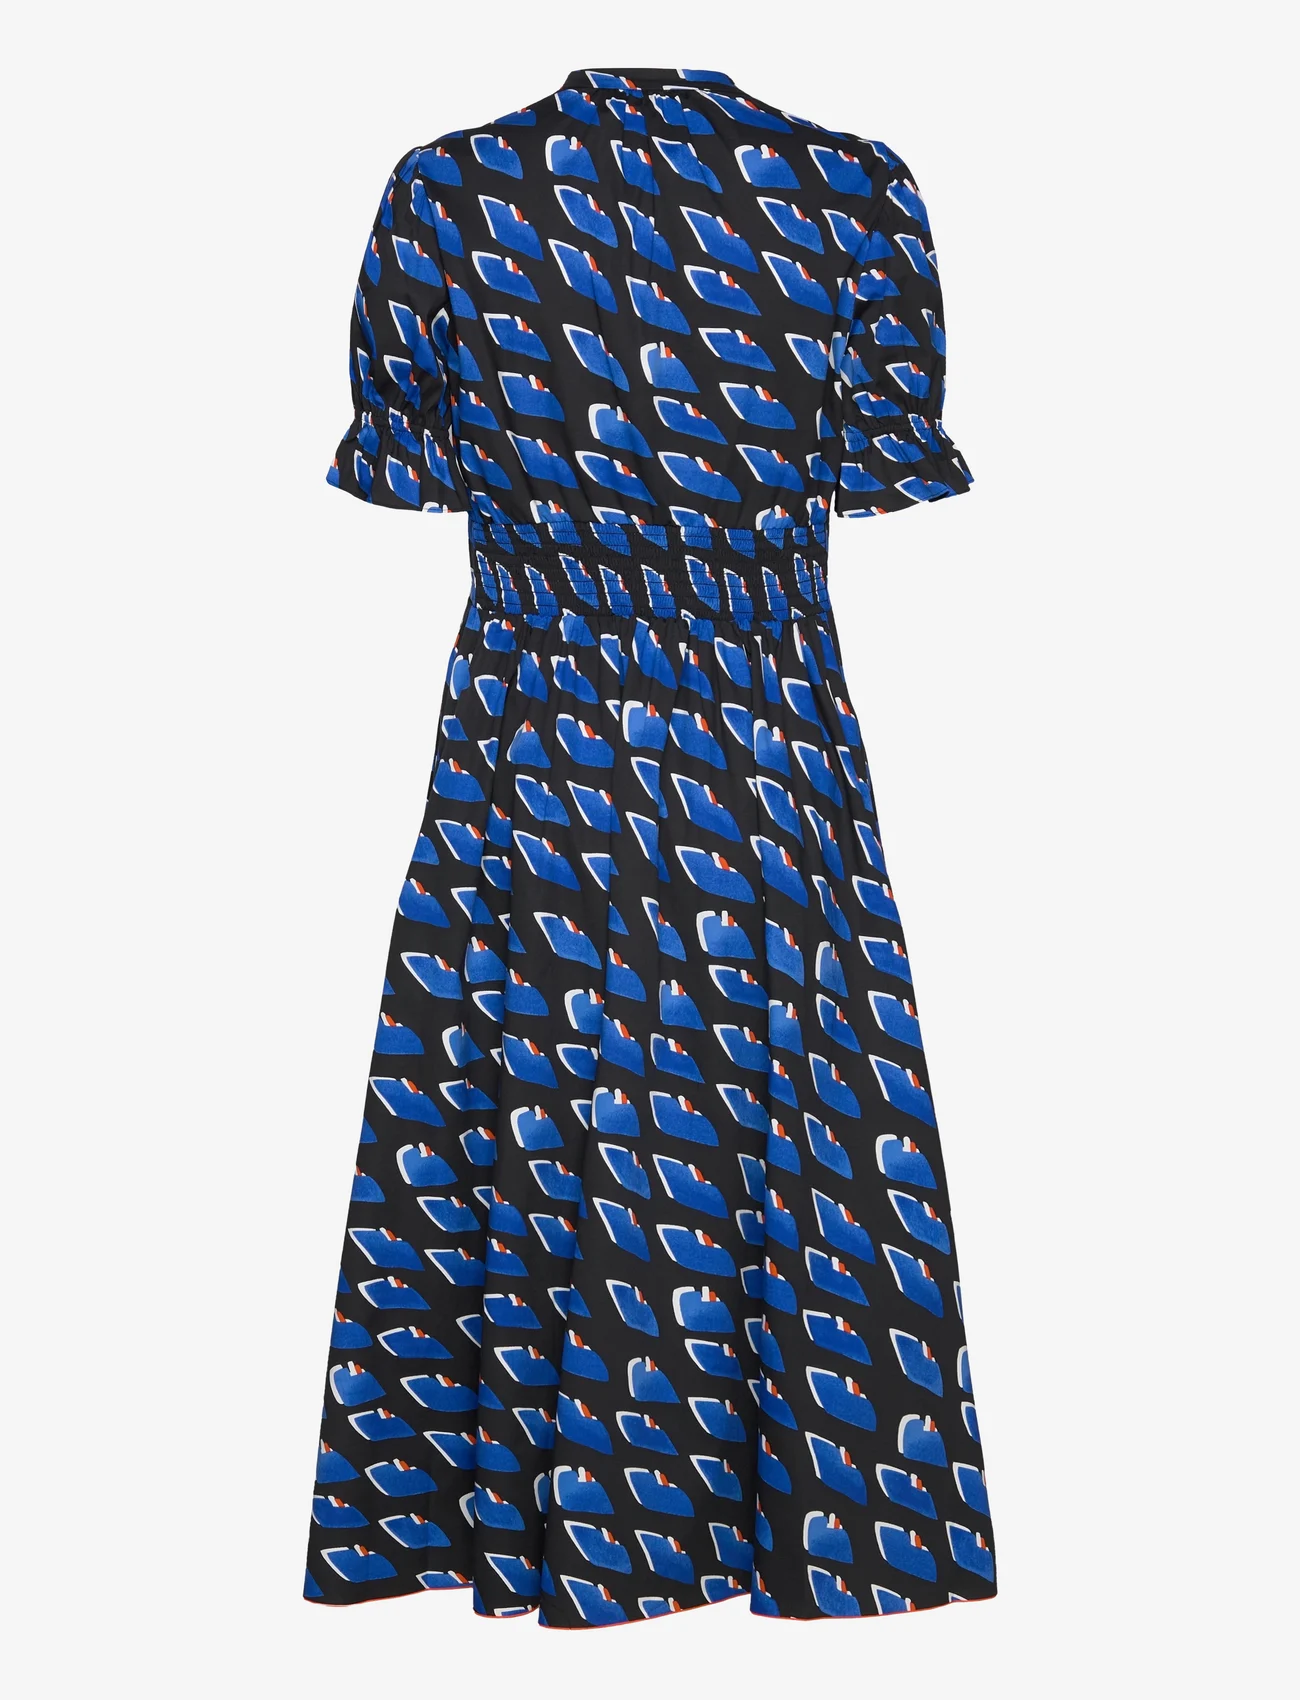 Diane von Furstenberg - DVF ERICA DRESS - sukienki letnie - betta scales - 1